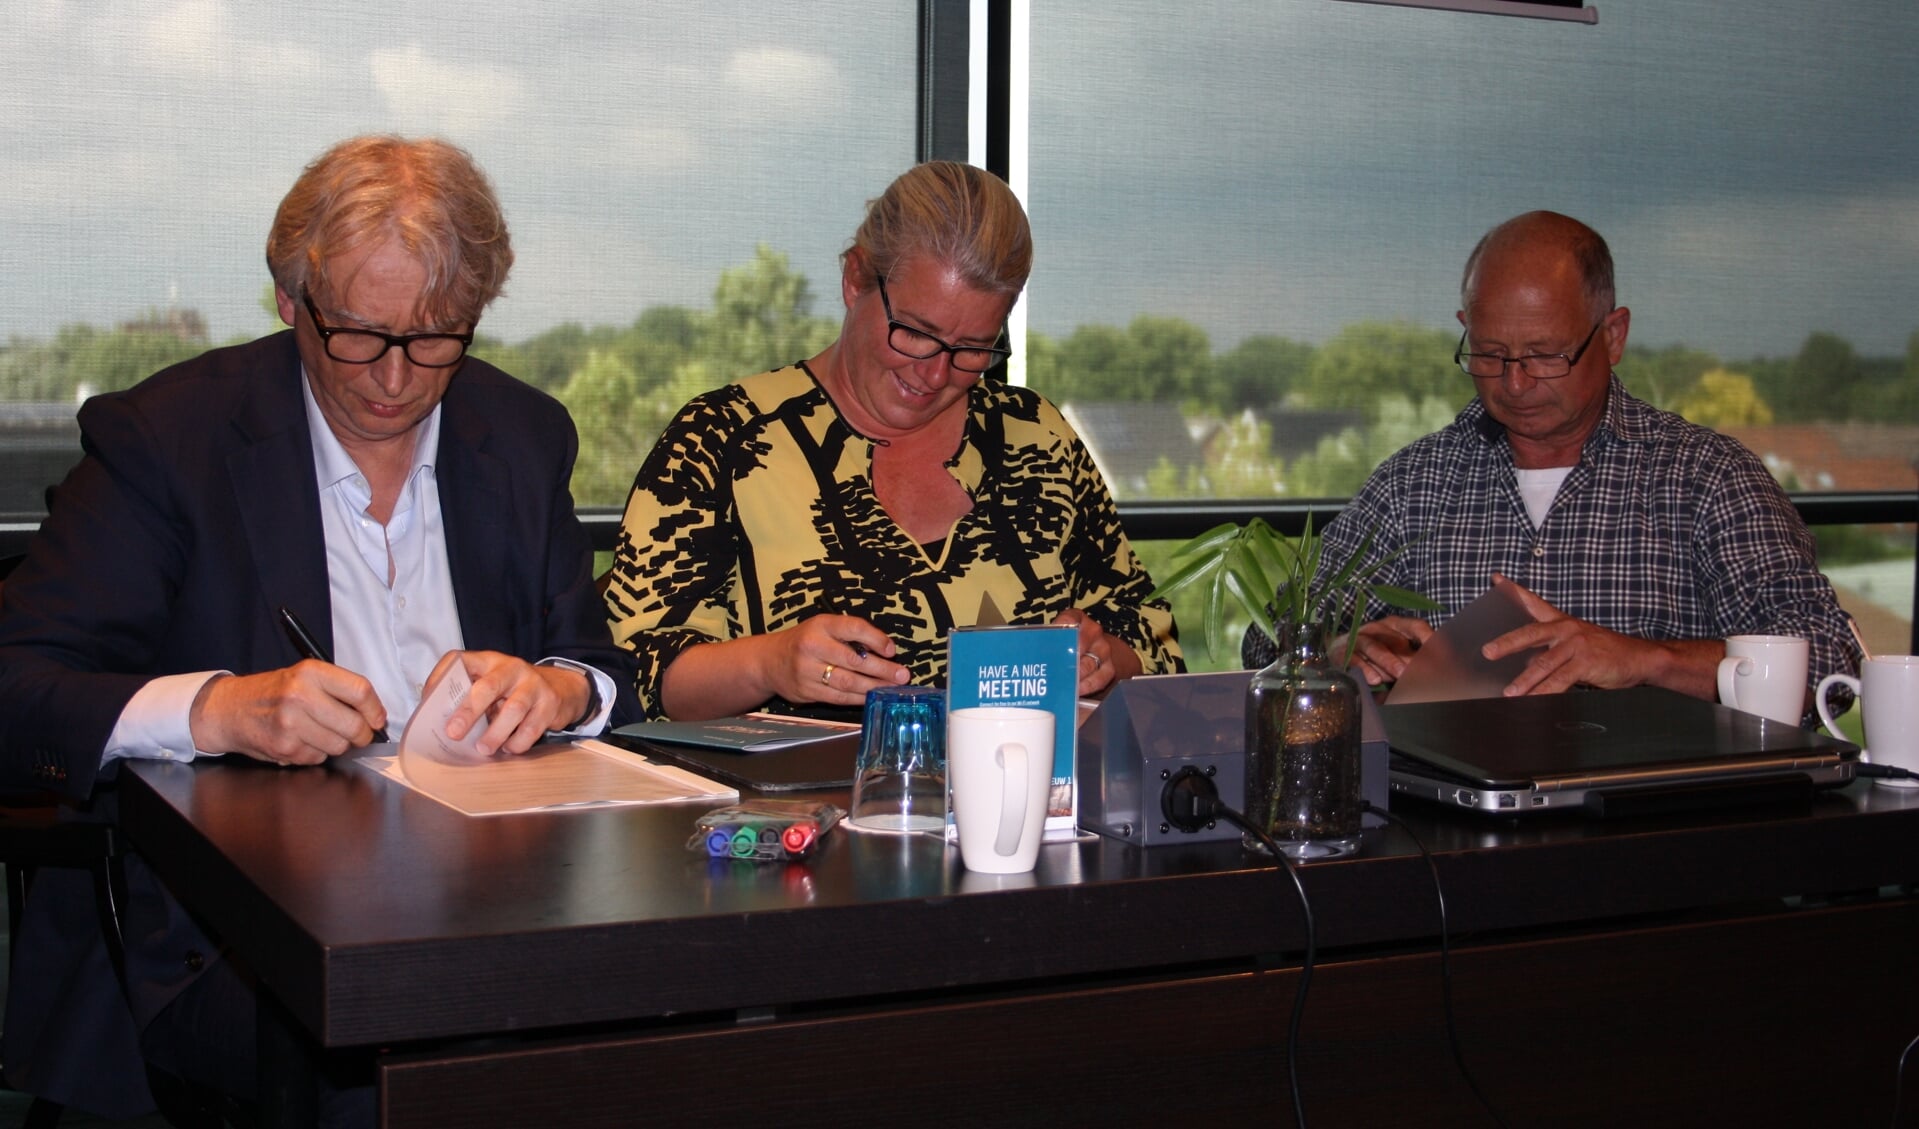 Ondertekening onderhandelingsresultaat door Margreet Pasman voor FNV Bouwen en Wonen, Willem Timmer van CNV Vakmensen en Hans den Boer namens Bruil Beton & Mix B.V.